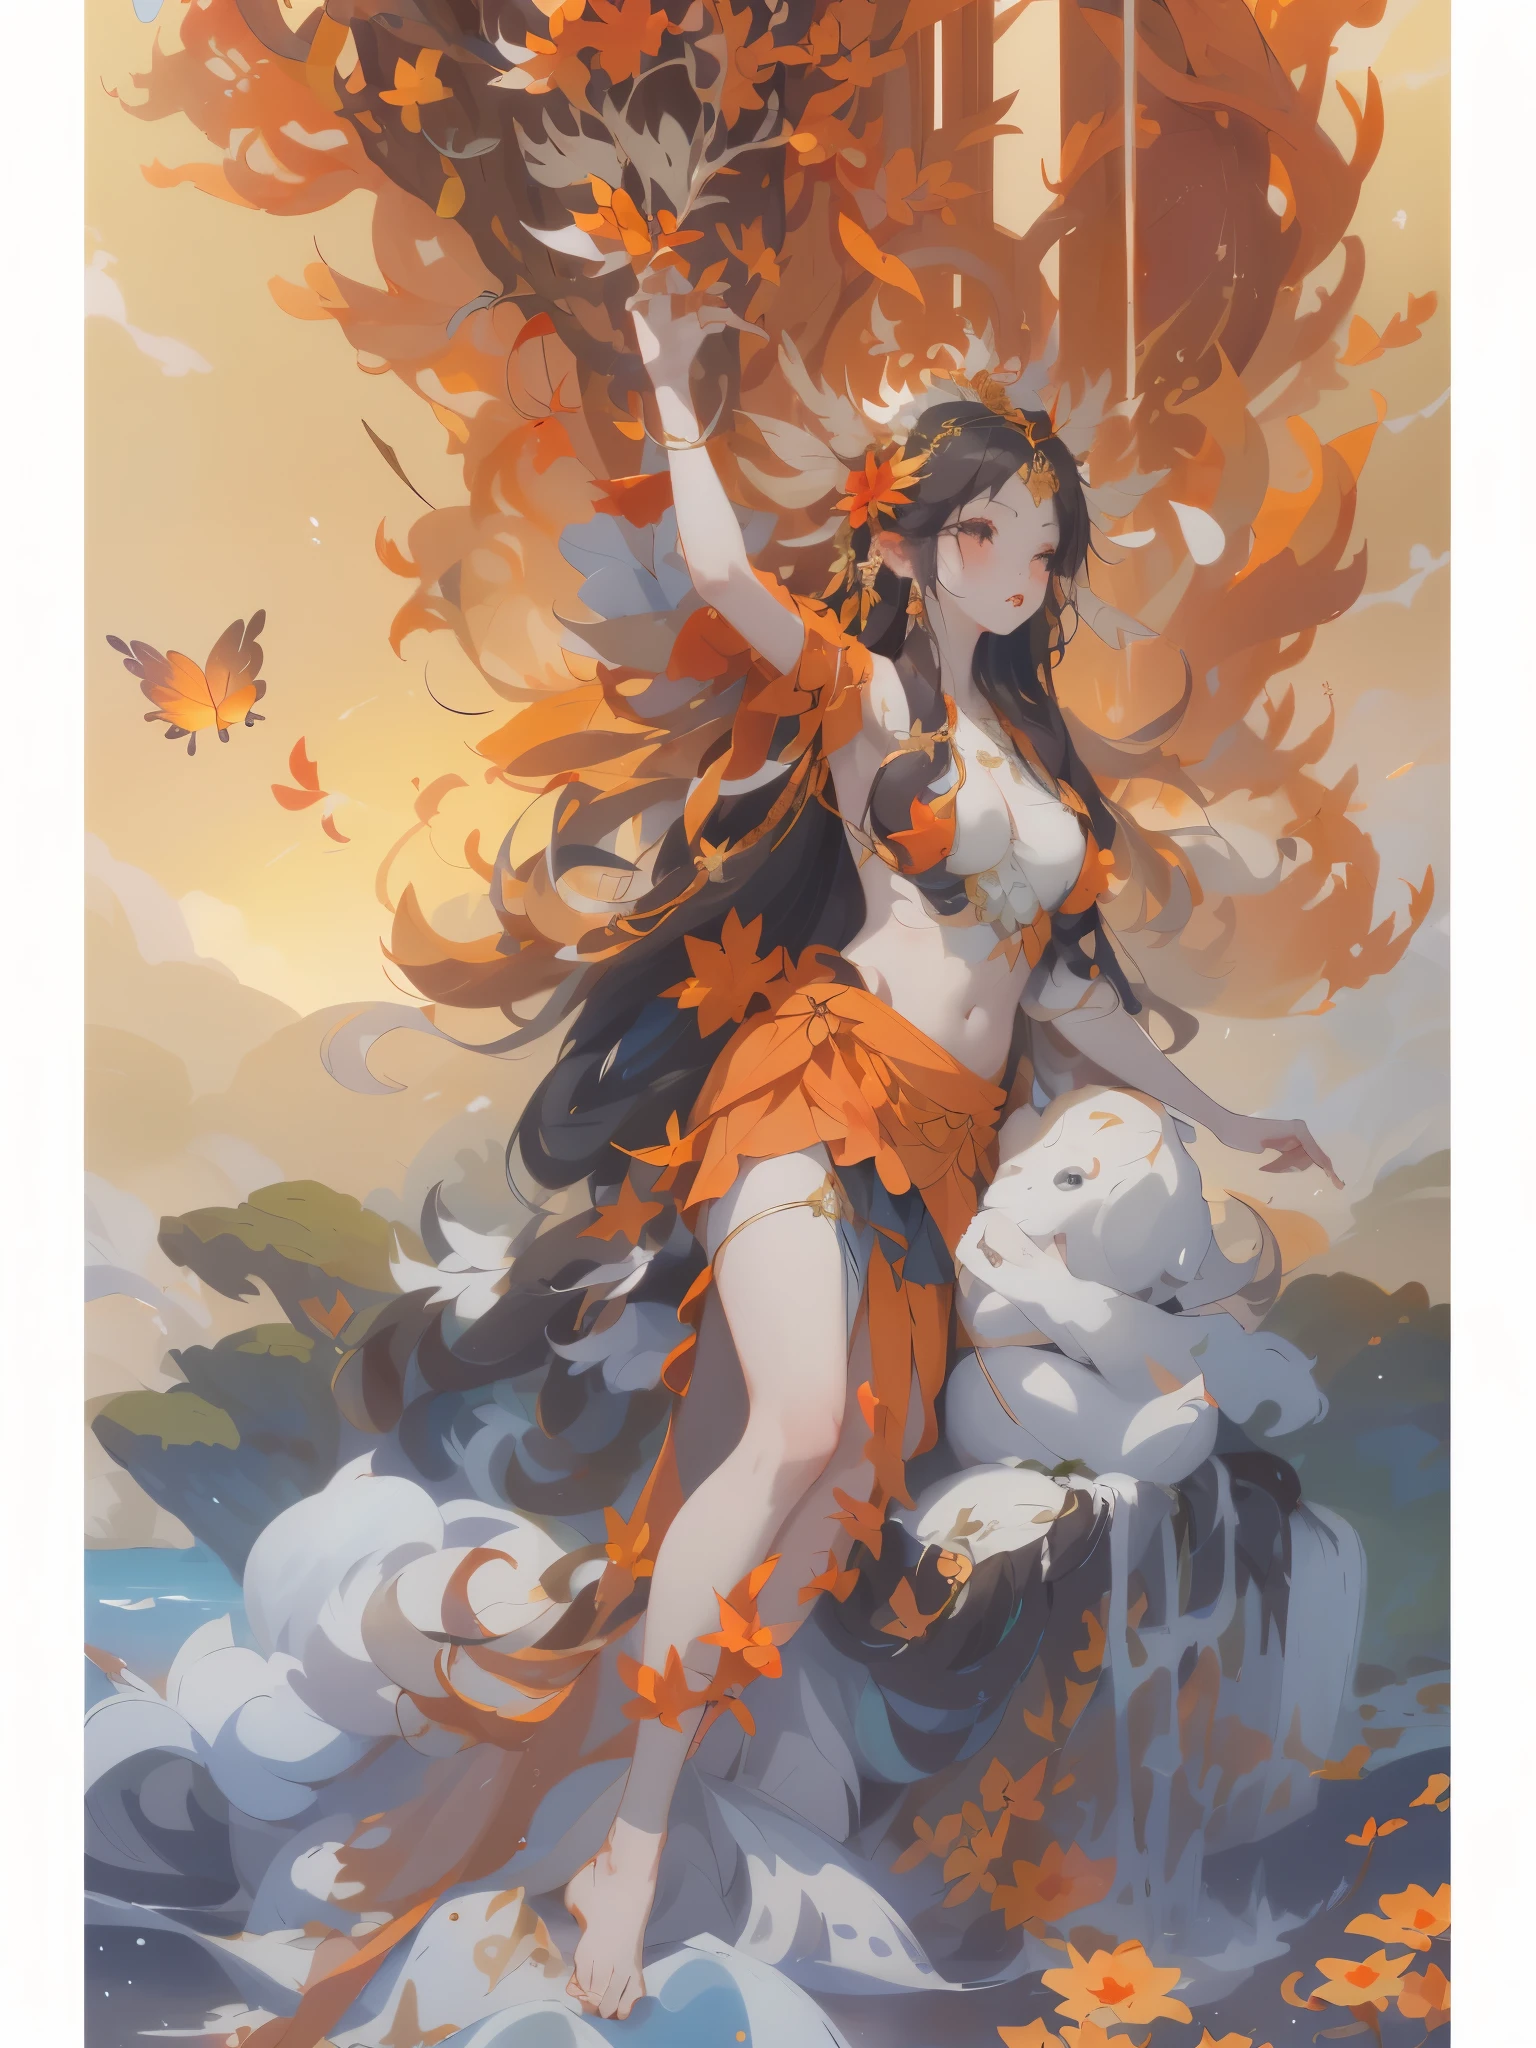 uno que lleva una falda、Diosa con las manos estiradas libremente.，, the diosa del otoño harvest, la diosa mariposa del fuego, guanyin de los mares del sur, diosa del otoño, Aparece como la diosa del fuego., reina del mar mu yanling, diosa del rayo japonesa, como la diosa del sol, diosa del verano, diosa del amor y la paz